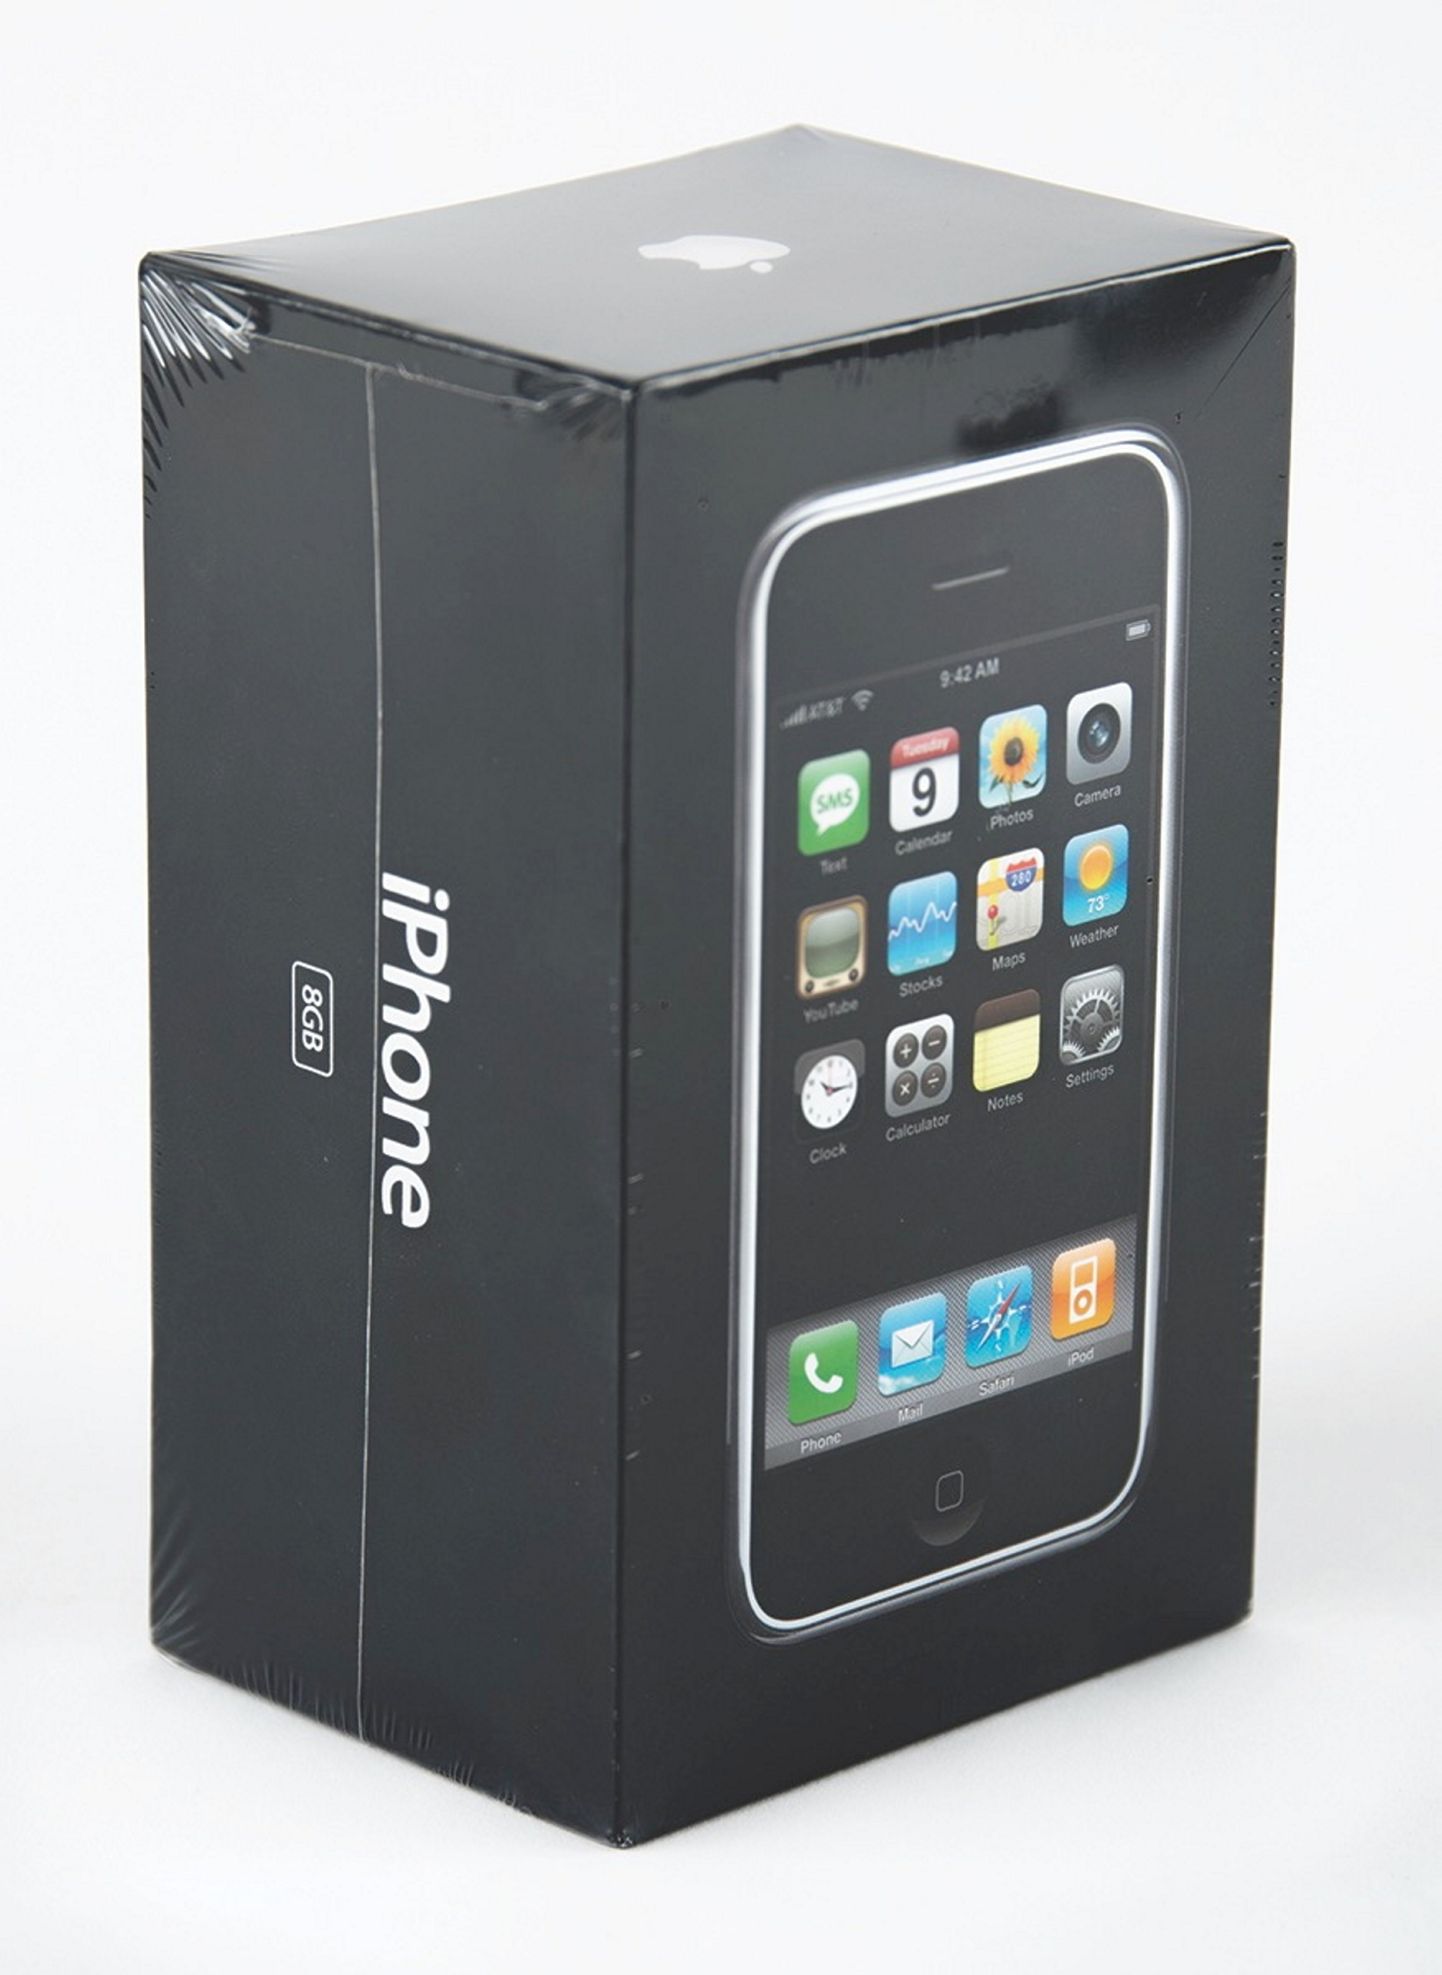 Нераспакованный iPhone первого поколения.